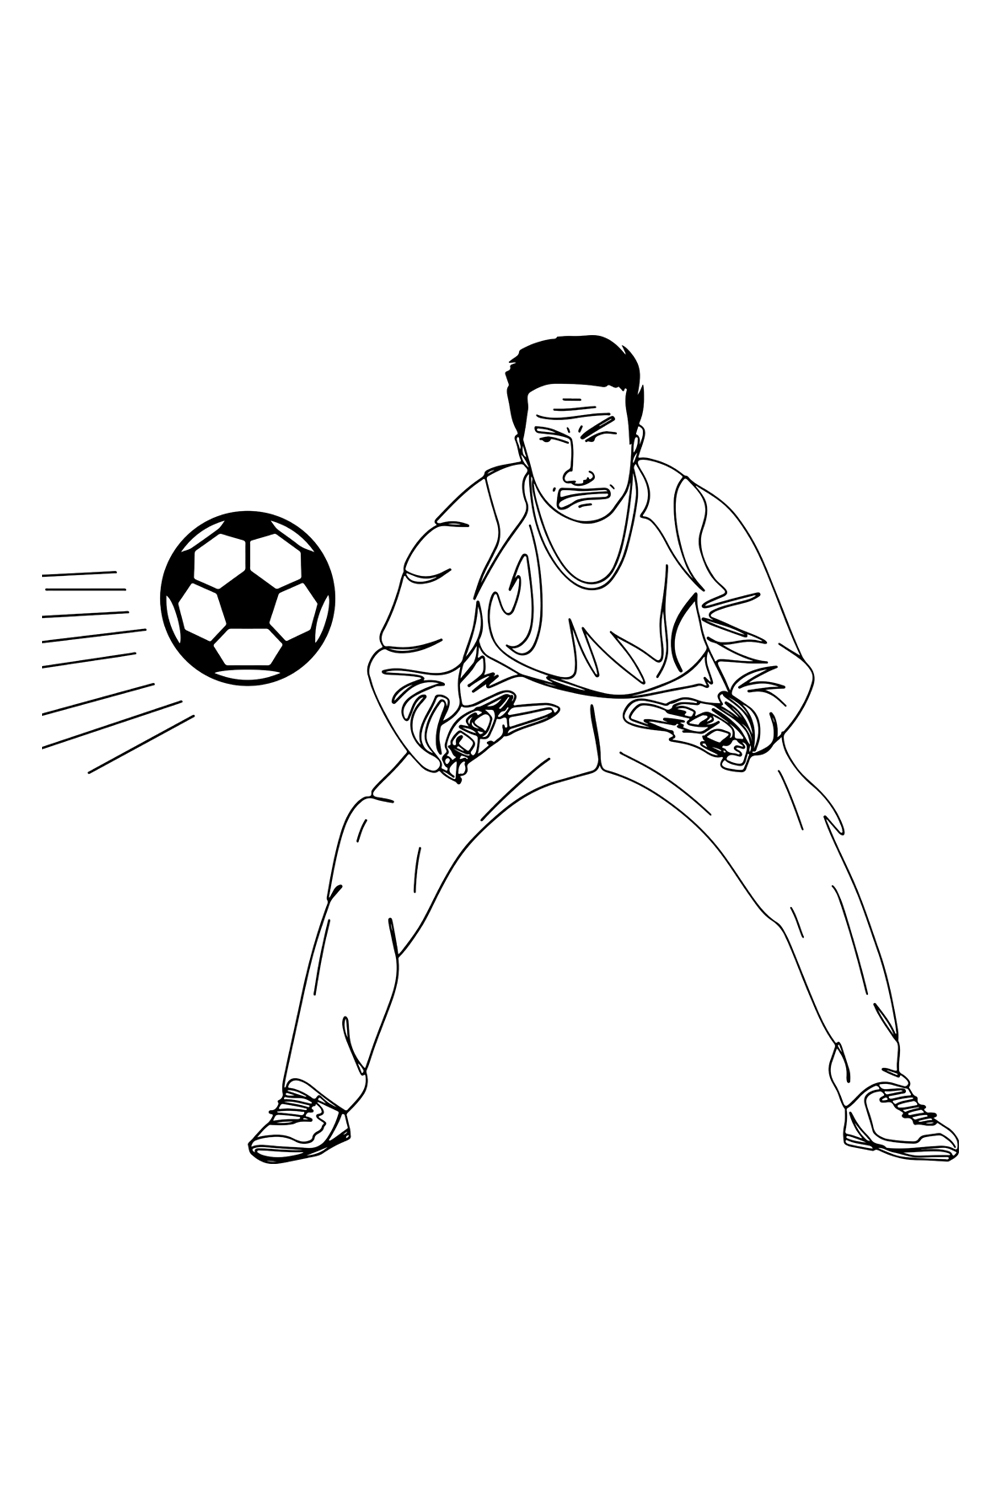 Save the Game: Line Art of Soccer Goalkeeper, Goalkeeper’s Pride: Vector Art of Soccer Save, Diving Defender: Line Art Sketch of Goalkeeper pinterest preview image.